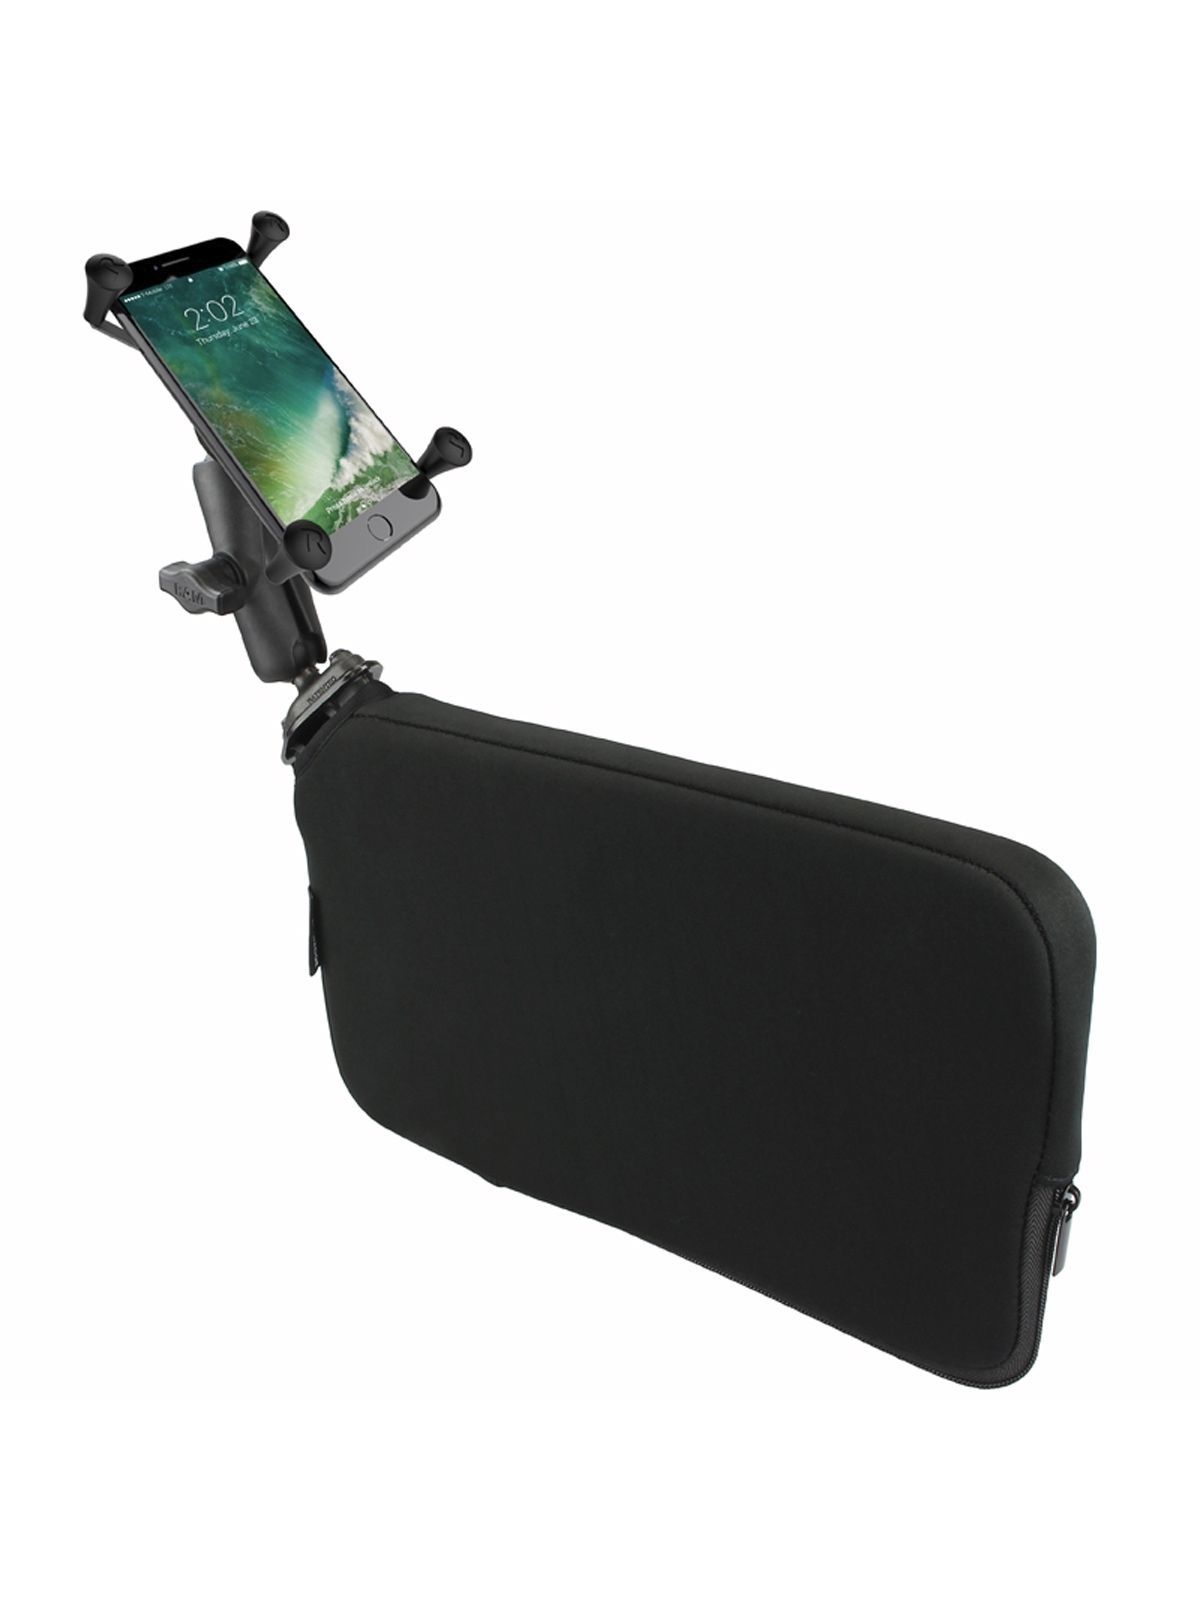 RAM Mounts Fahrzeug-Halterung mit X-Grip Halteklammer für Smartphones bis 114,3 mm Breite - B-Kugel (1 Zoll), Tough-Wedge (aufblasbar), mittlerer Verb